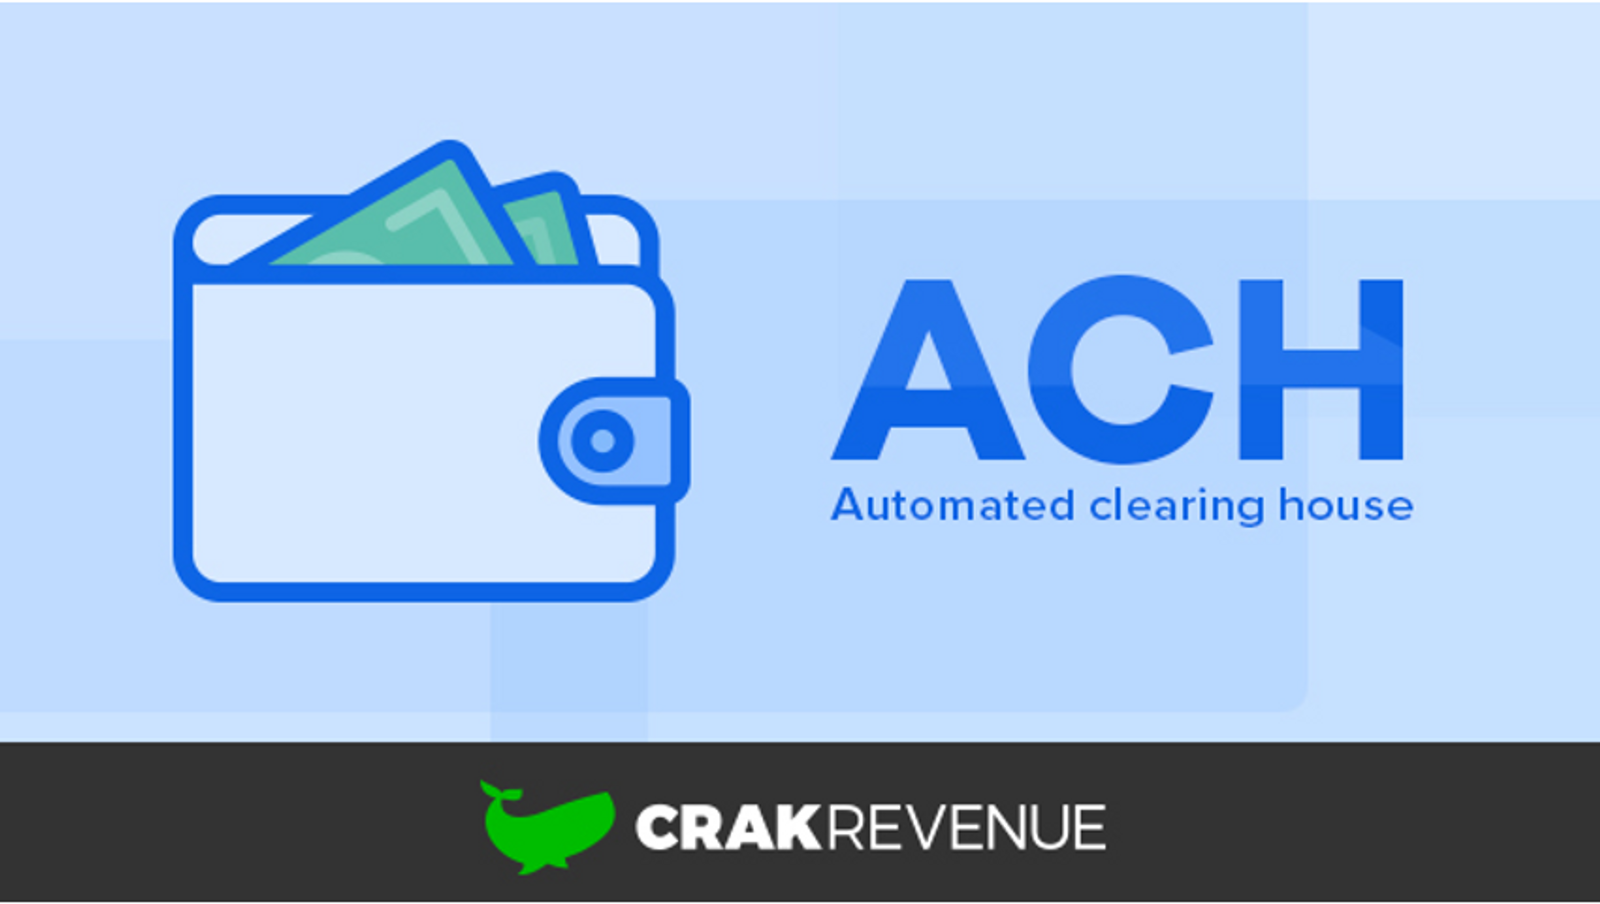 CrakRevenue Introduces ACH Payment System for Affiliates